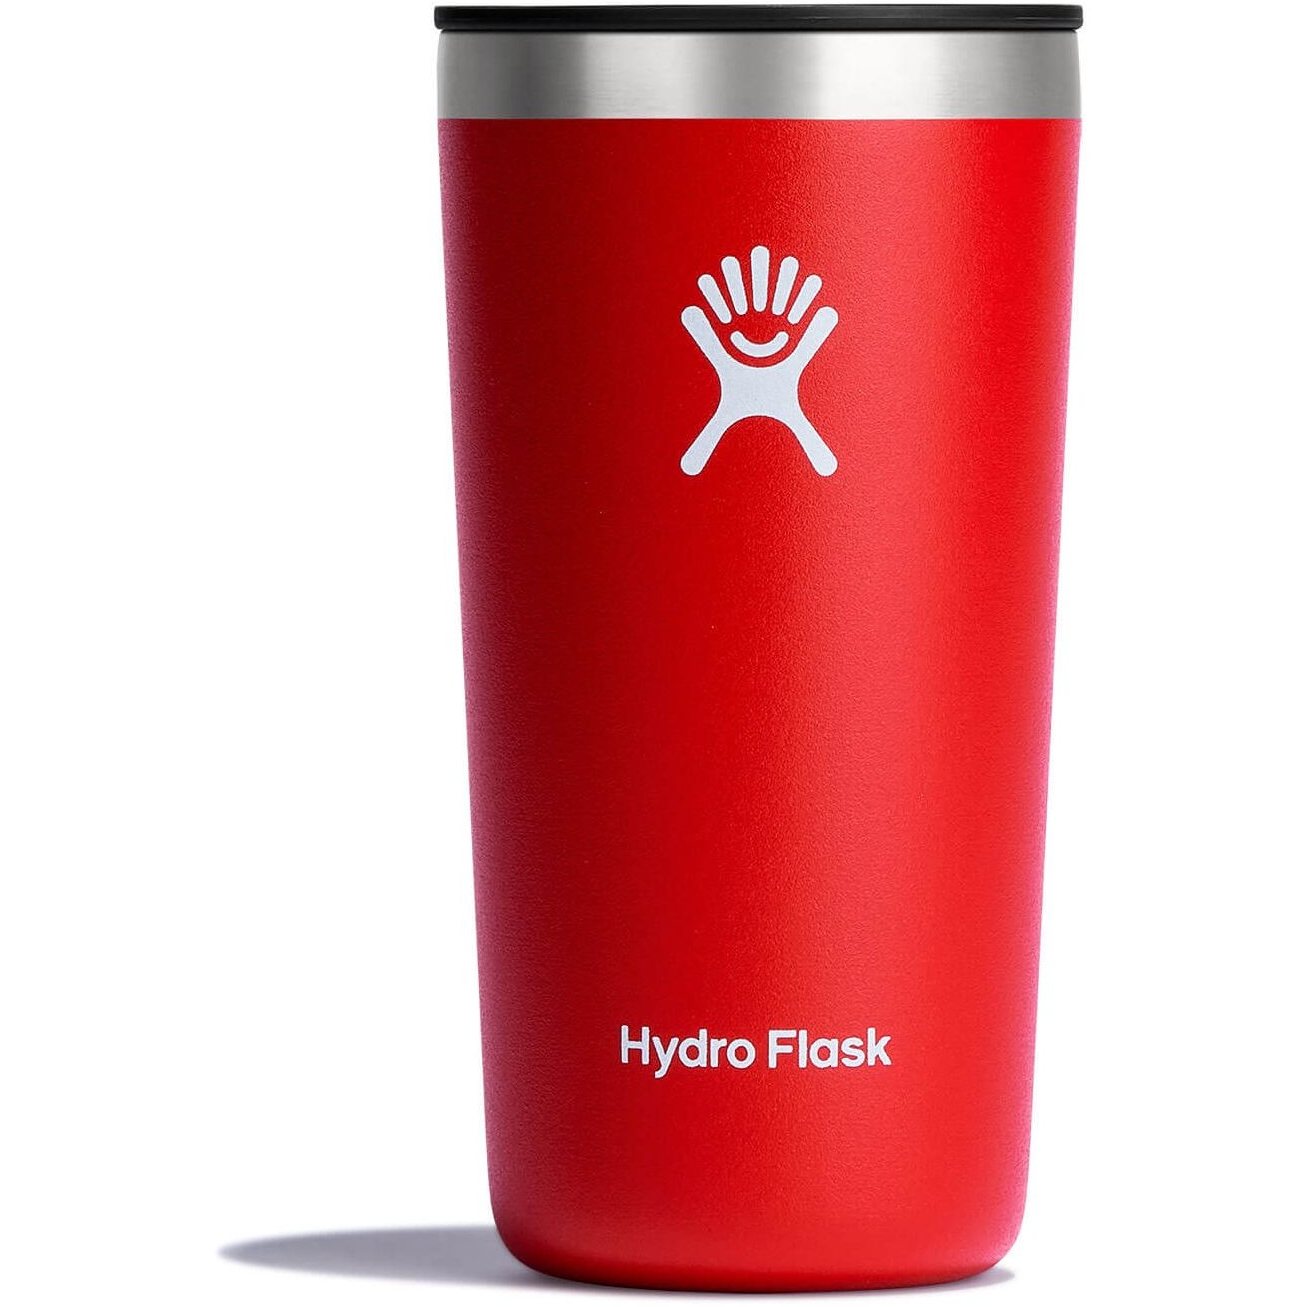 Hydro Flask 12 oz All Around Tumbler - 354ml - Black